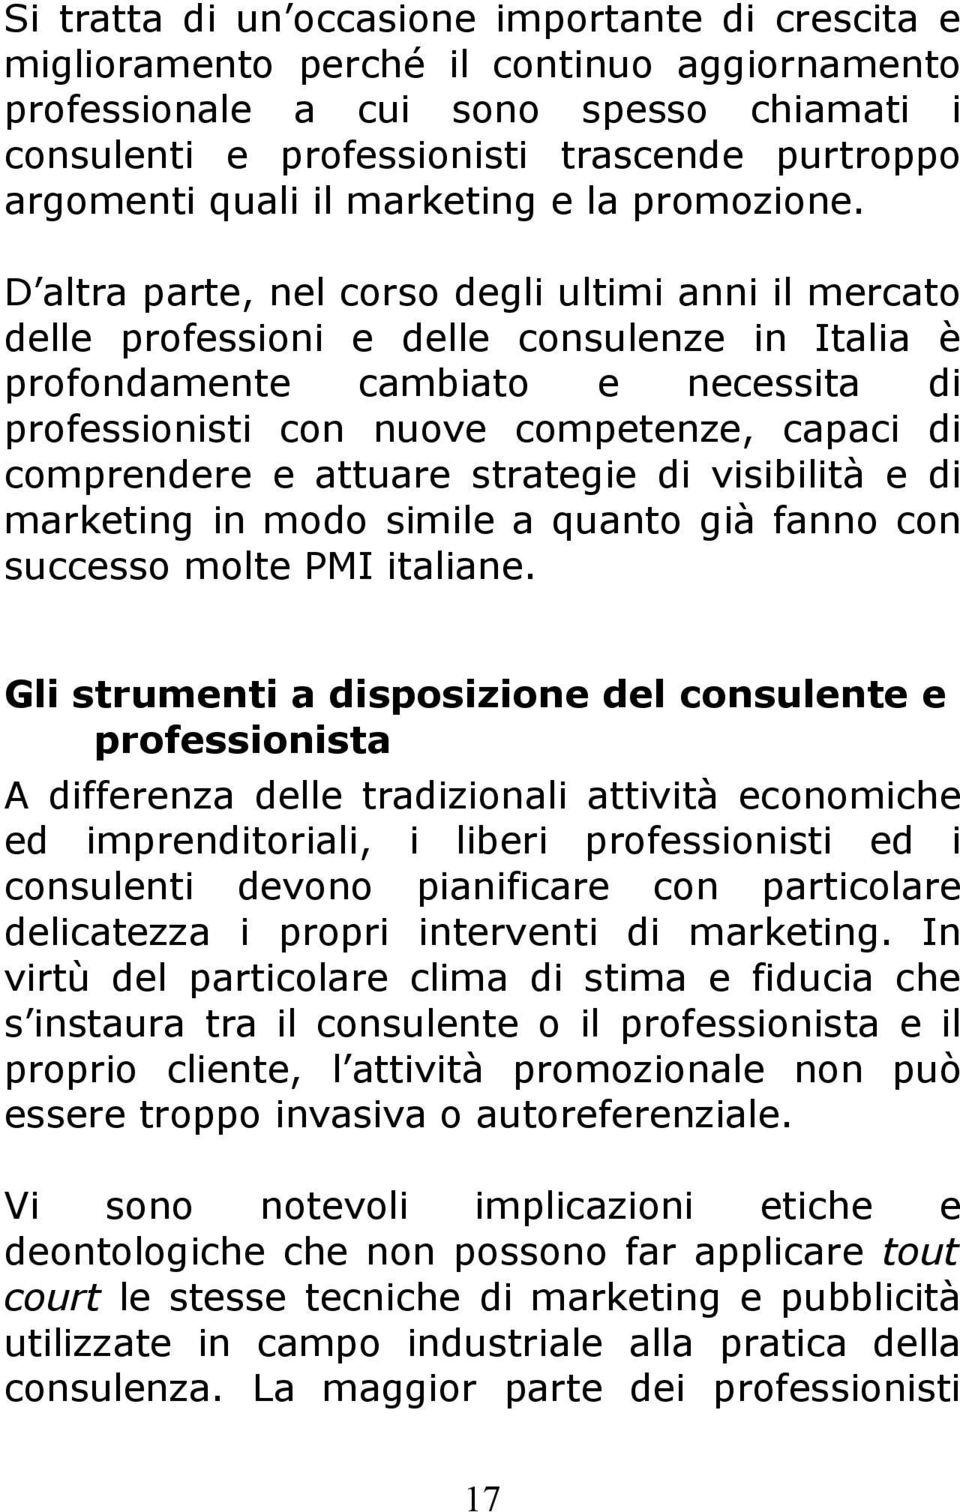 D altra parte, nel corso degli ultimi anni il mercato delle professioni e delle consulenze in Italia è profondamente cambiato e necessita di professionisti con nuove competenze, capaci di comprendere